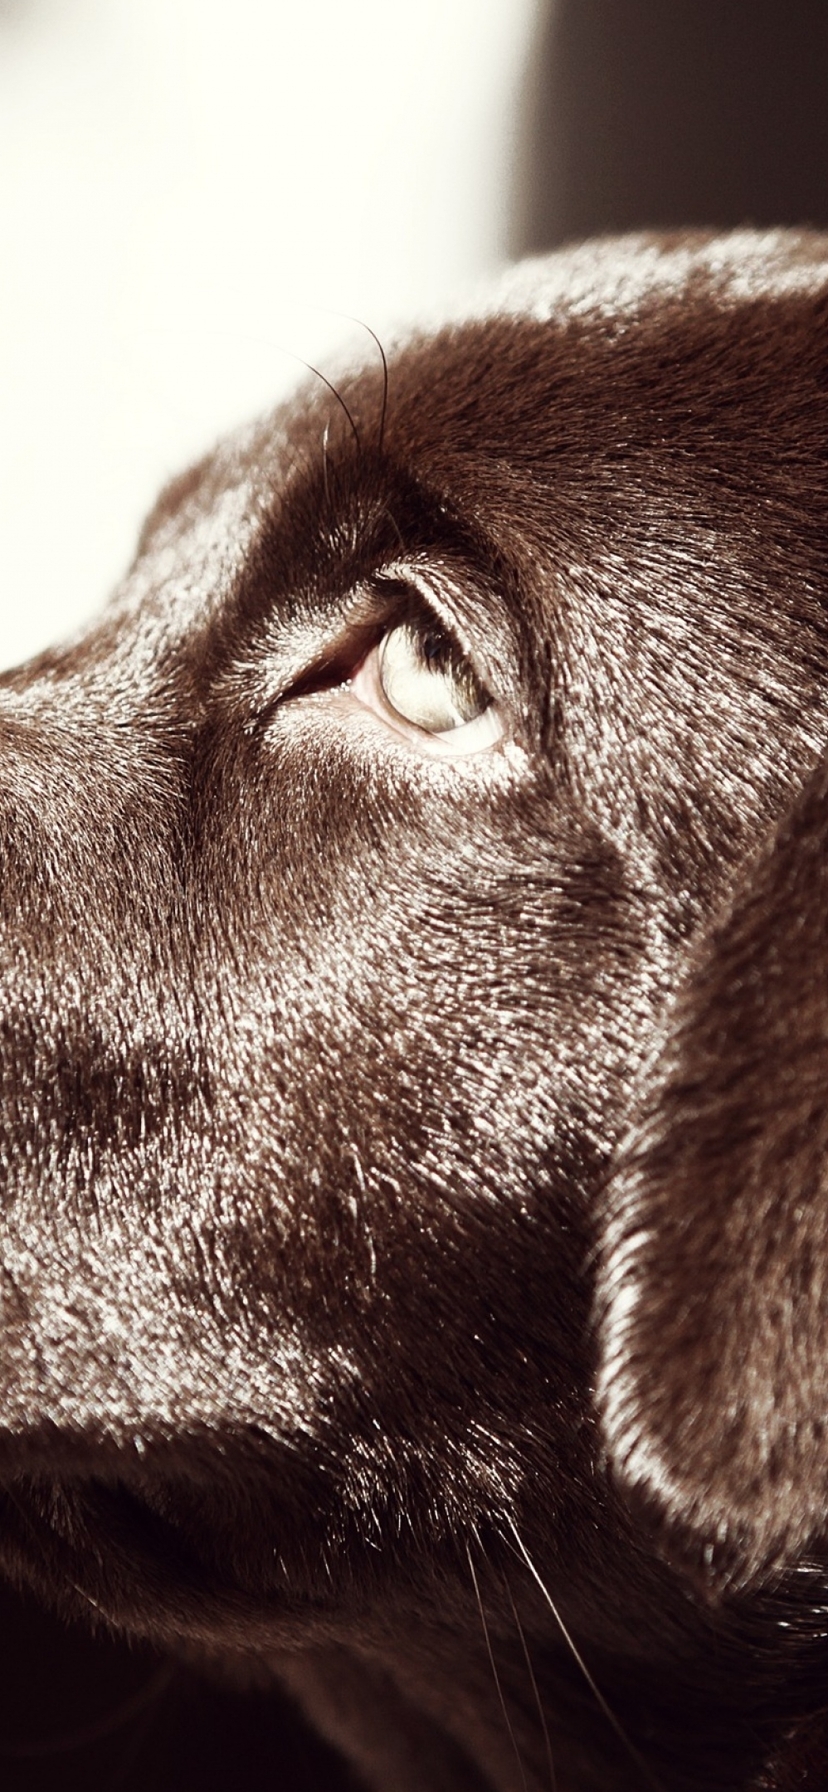 Картинка: Лабрадор, собака, пёс, нос, глаз, уши, морда, профиль, шоколадный окрас